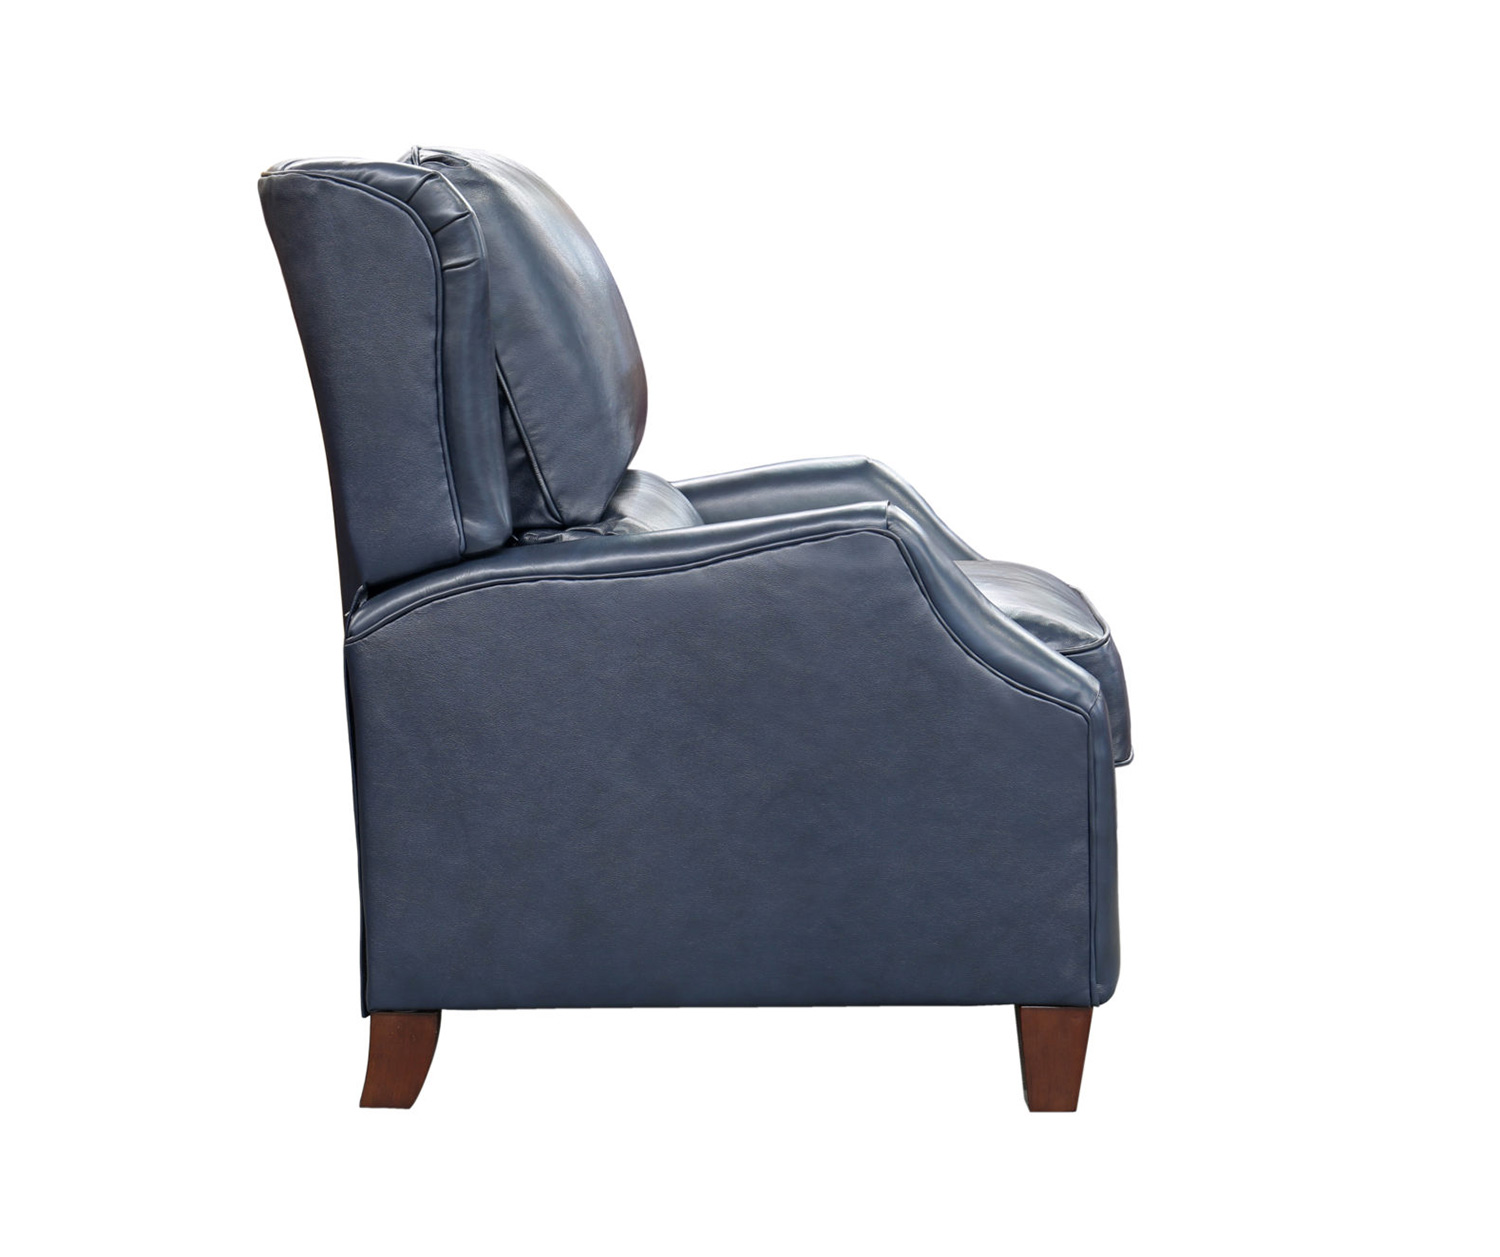 Barcalounger Berkeley Recliner Chair - Shoreham Blue/All Leather